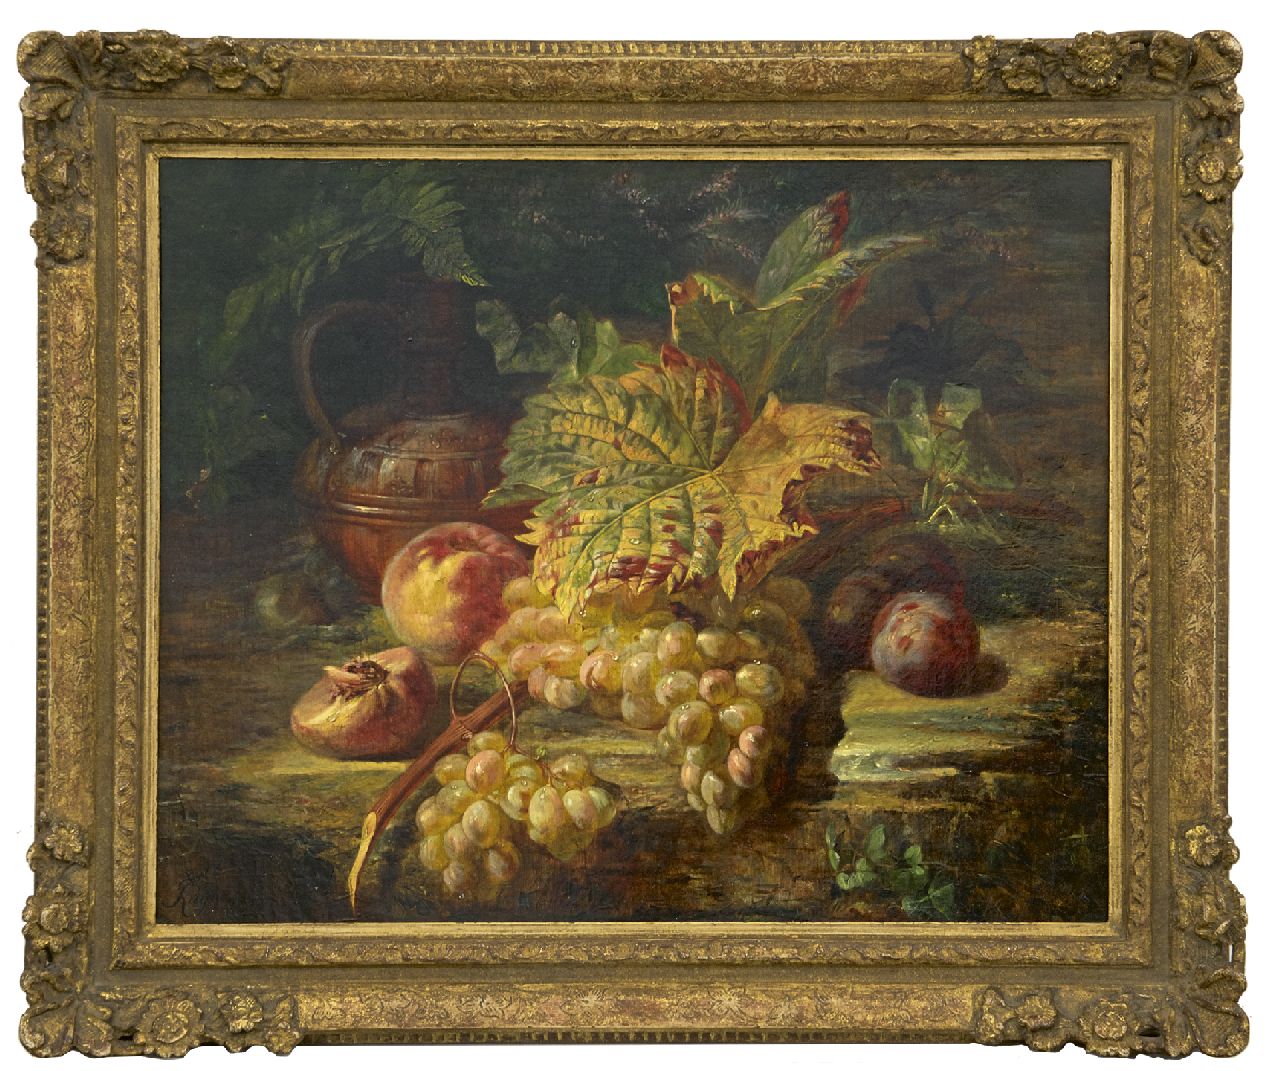 Huygens F.J.  | 'François' Joseph Huygens | Schilderijen te koop aangeboden | Stilleven met druiven, olieverf op doek 48,6 x 59,5 cm, gesigneerd linksonder en gedateerd '60, zonder lijst